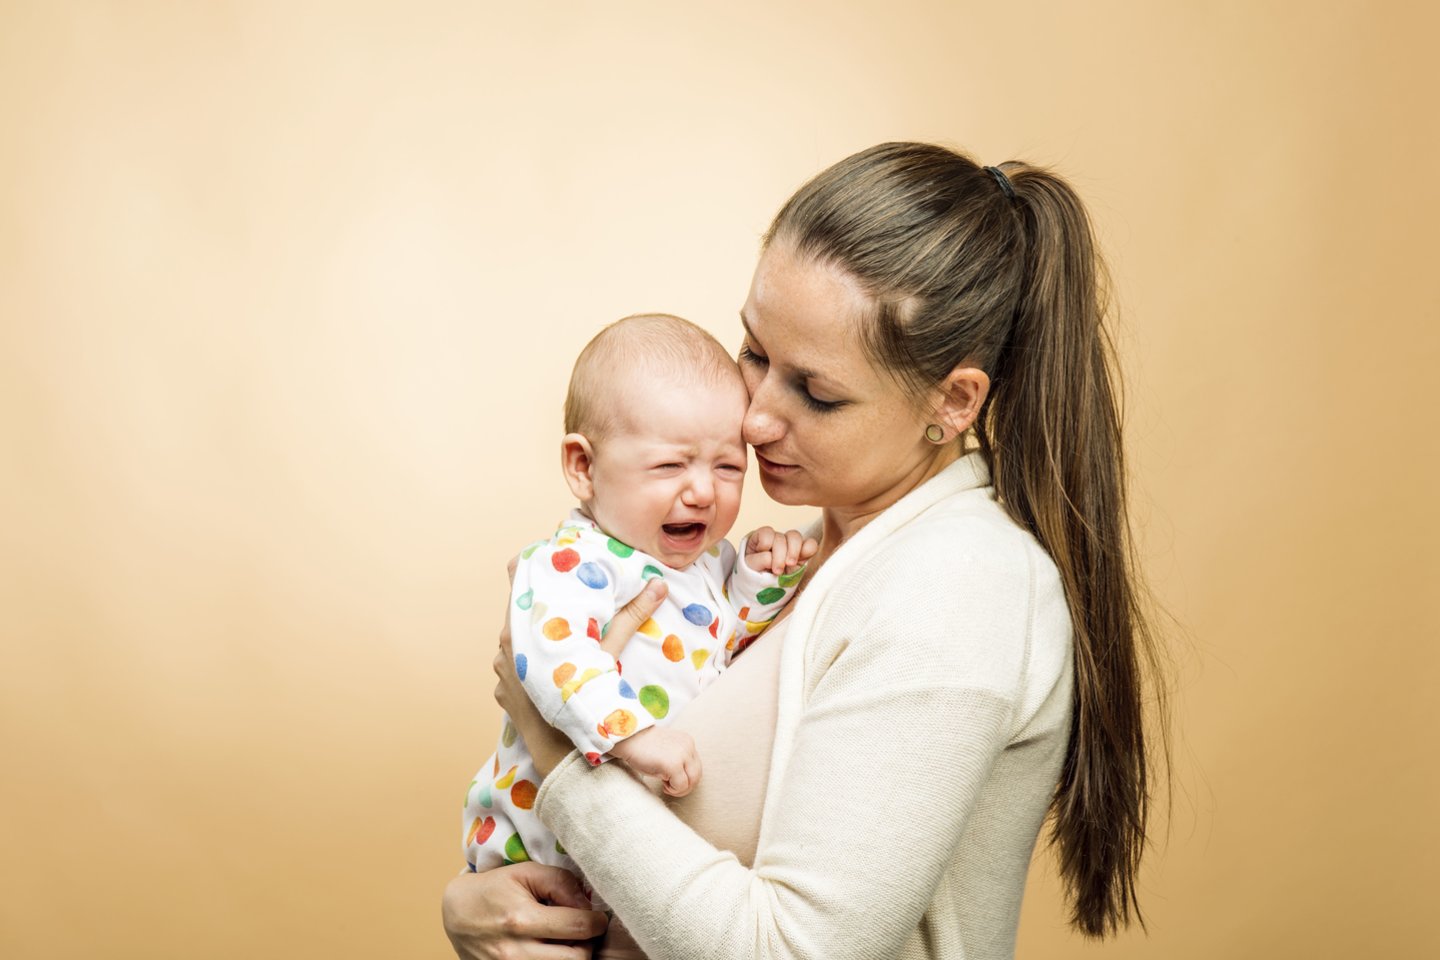  Kūdikio verksmas jo pirmaisiais gyvenimo mėnesiais – beveik vienintelė „kalba“, kuria jis gali komunikuoti, pasiskųsti, papasakoti apie patiriamus nepatogumus. <br> 123rf nuotr.